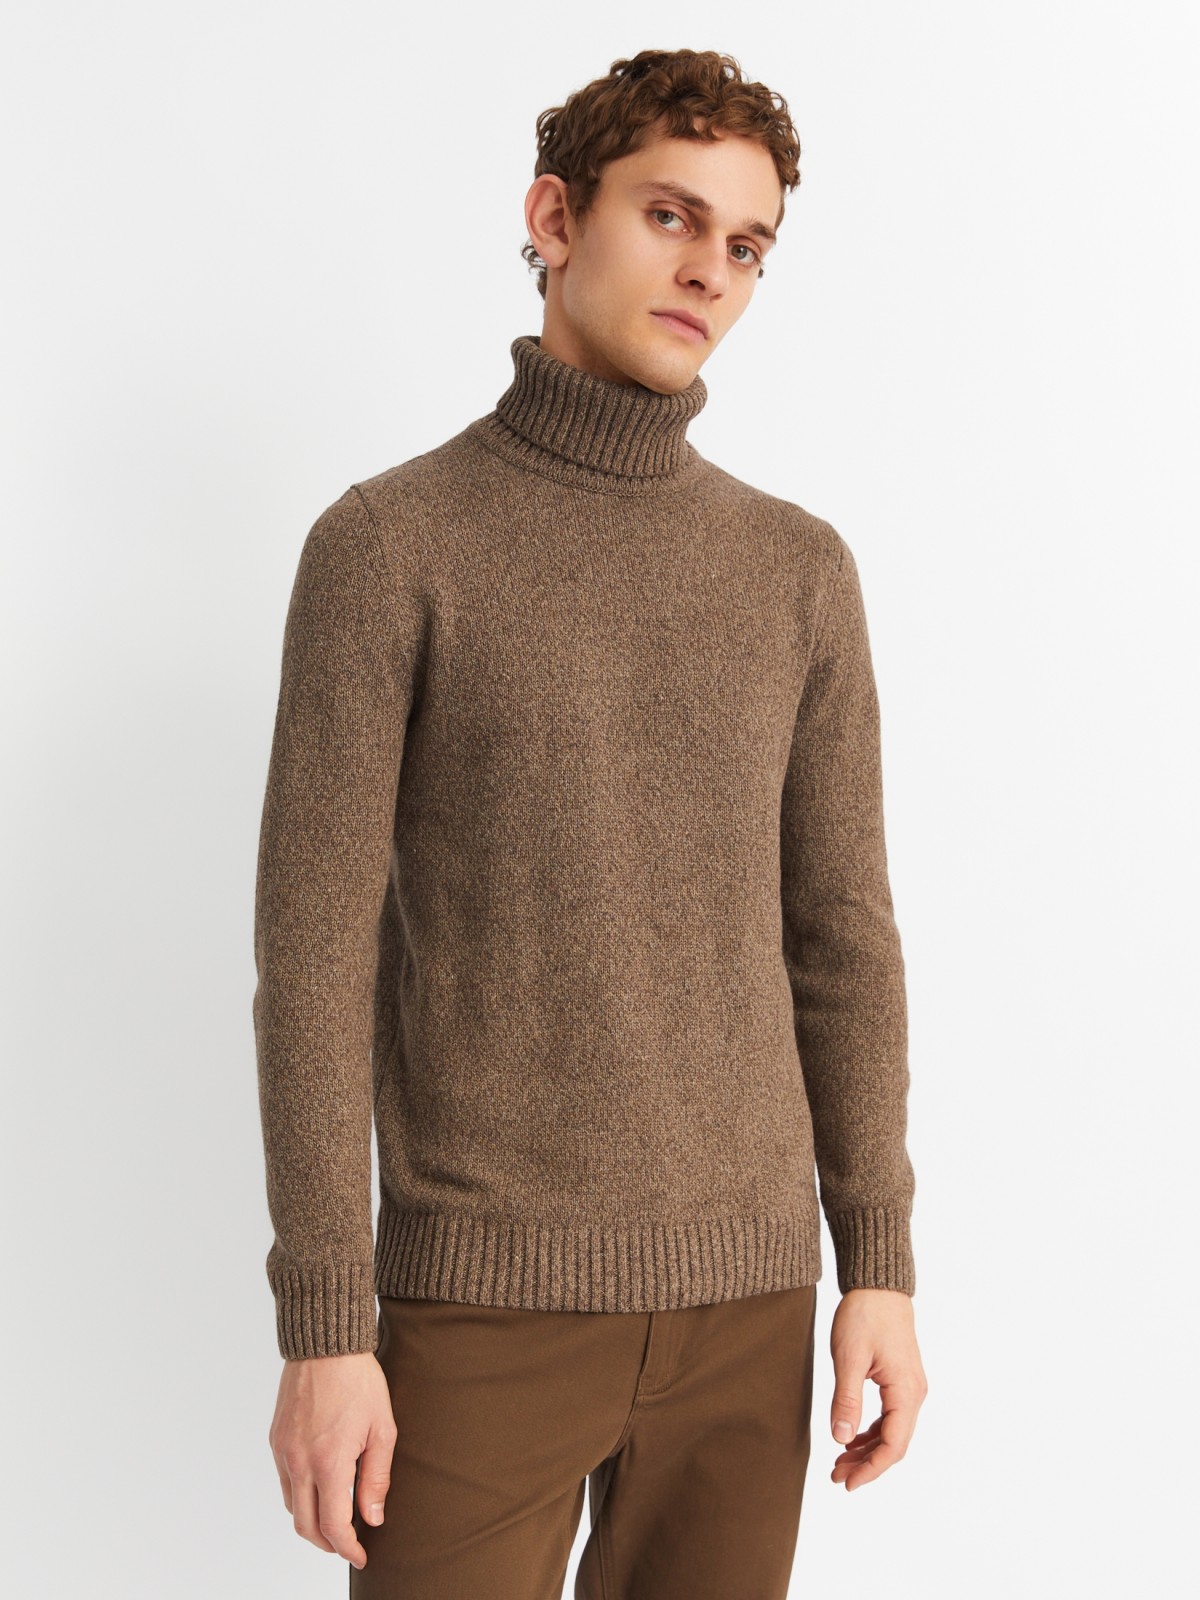 Вязаная шерстяная водолазка-свитер с горлом zolla 013436163012, цвет коричневый, размер S